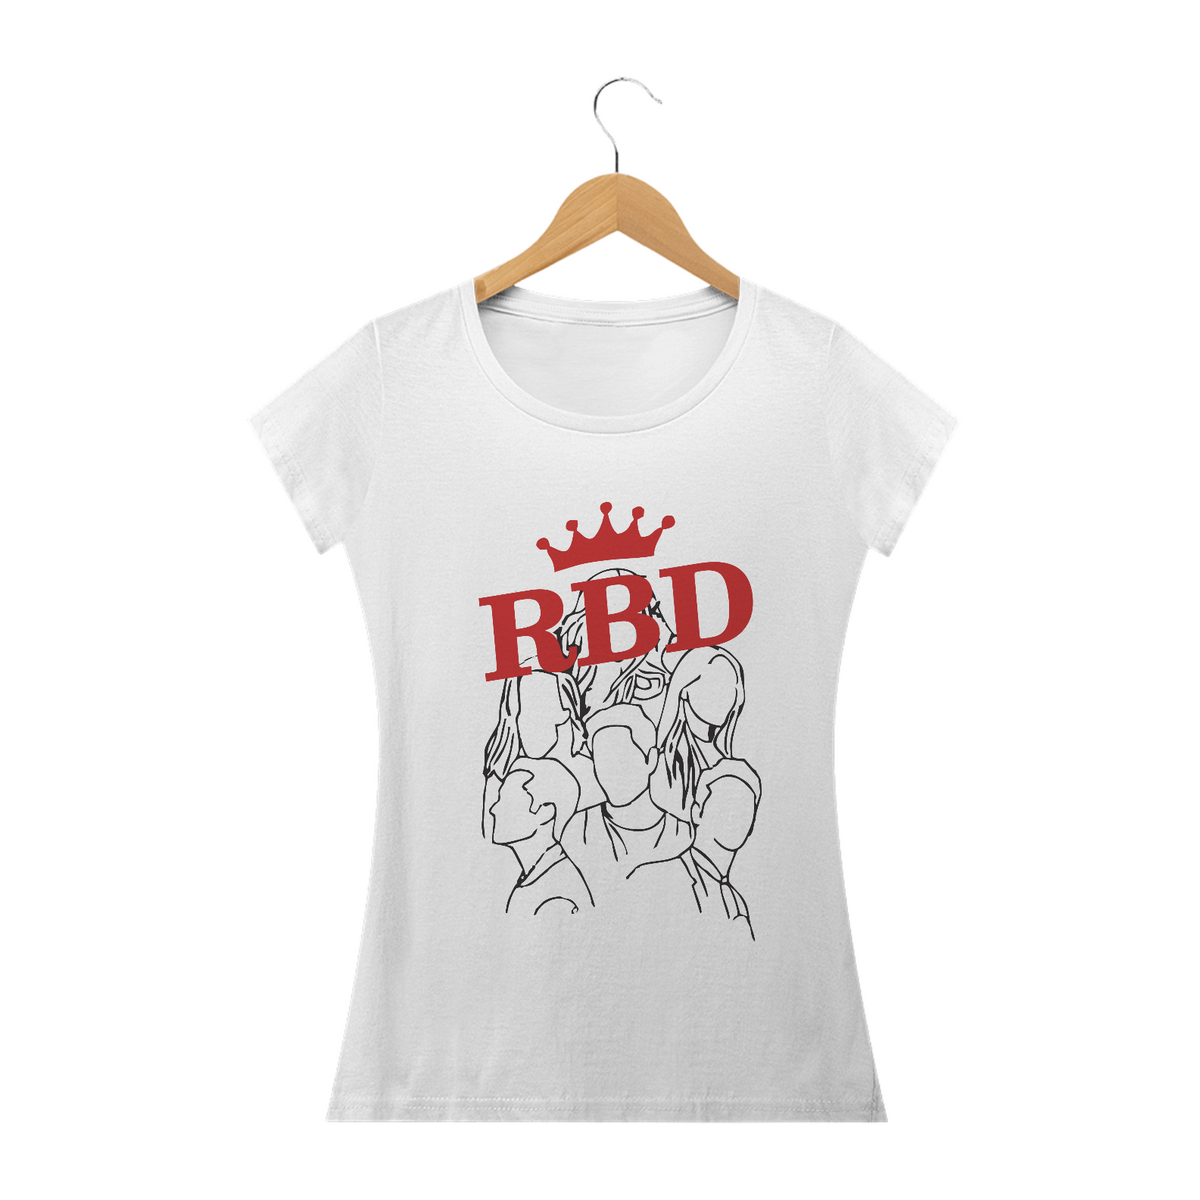 Nome do produto: Babylook RBD - Por todo el mundo